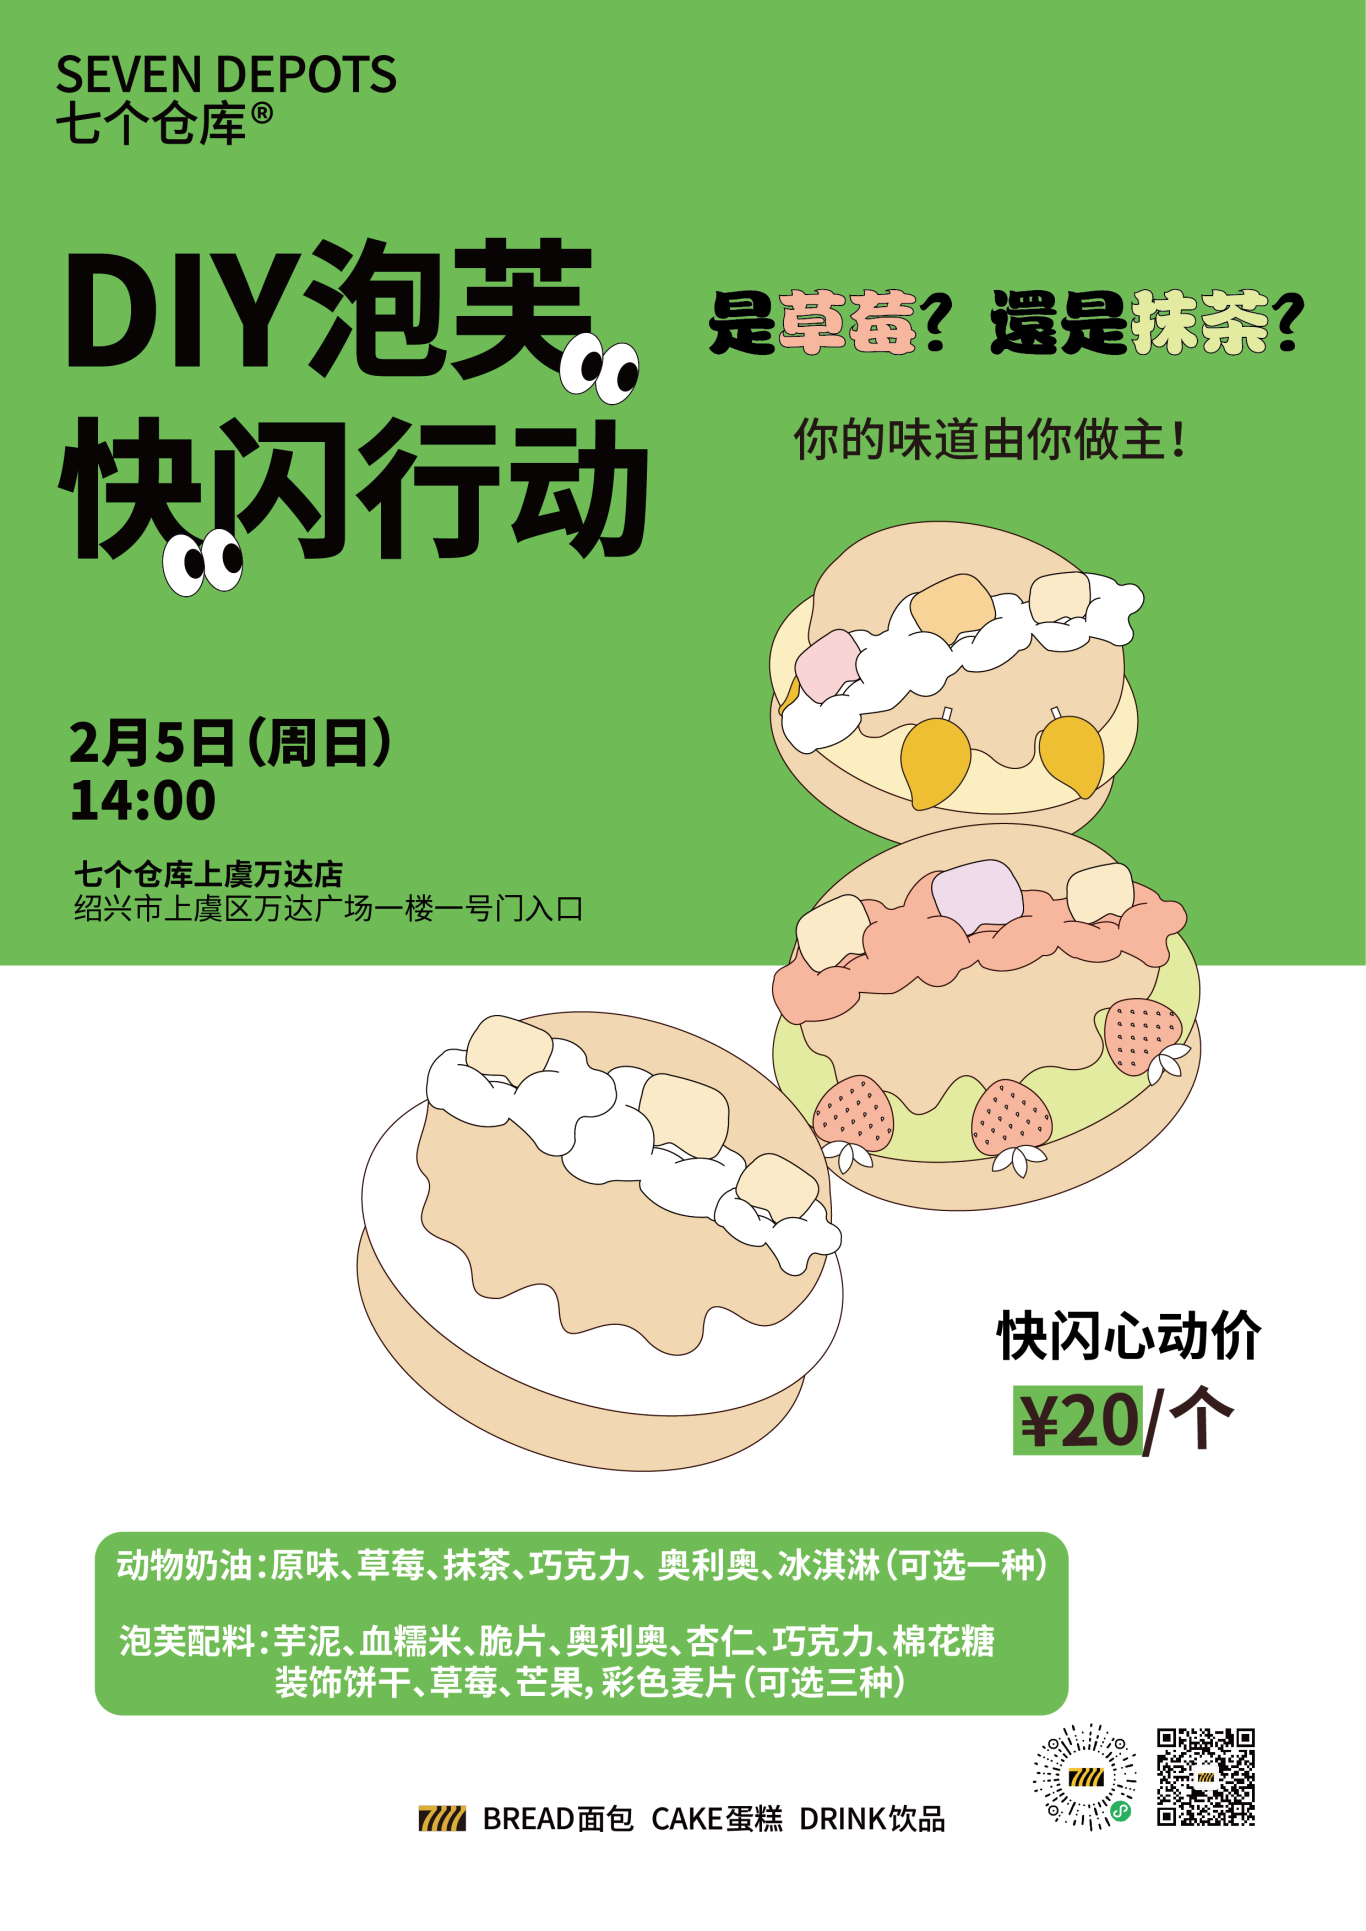 面包店宣传物料海报等设计图14